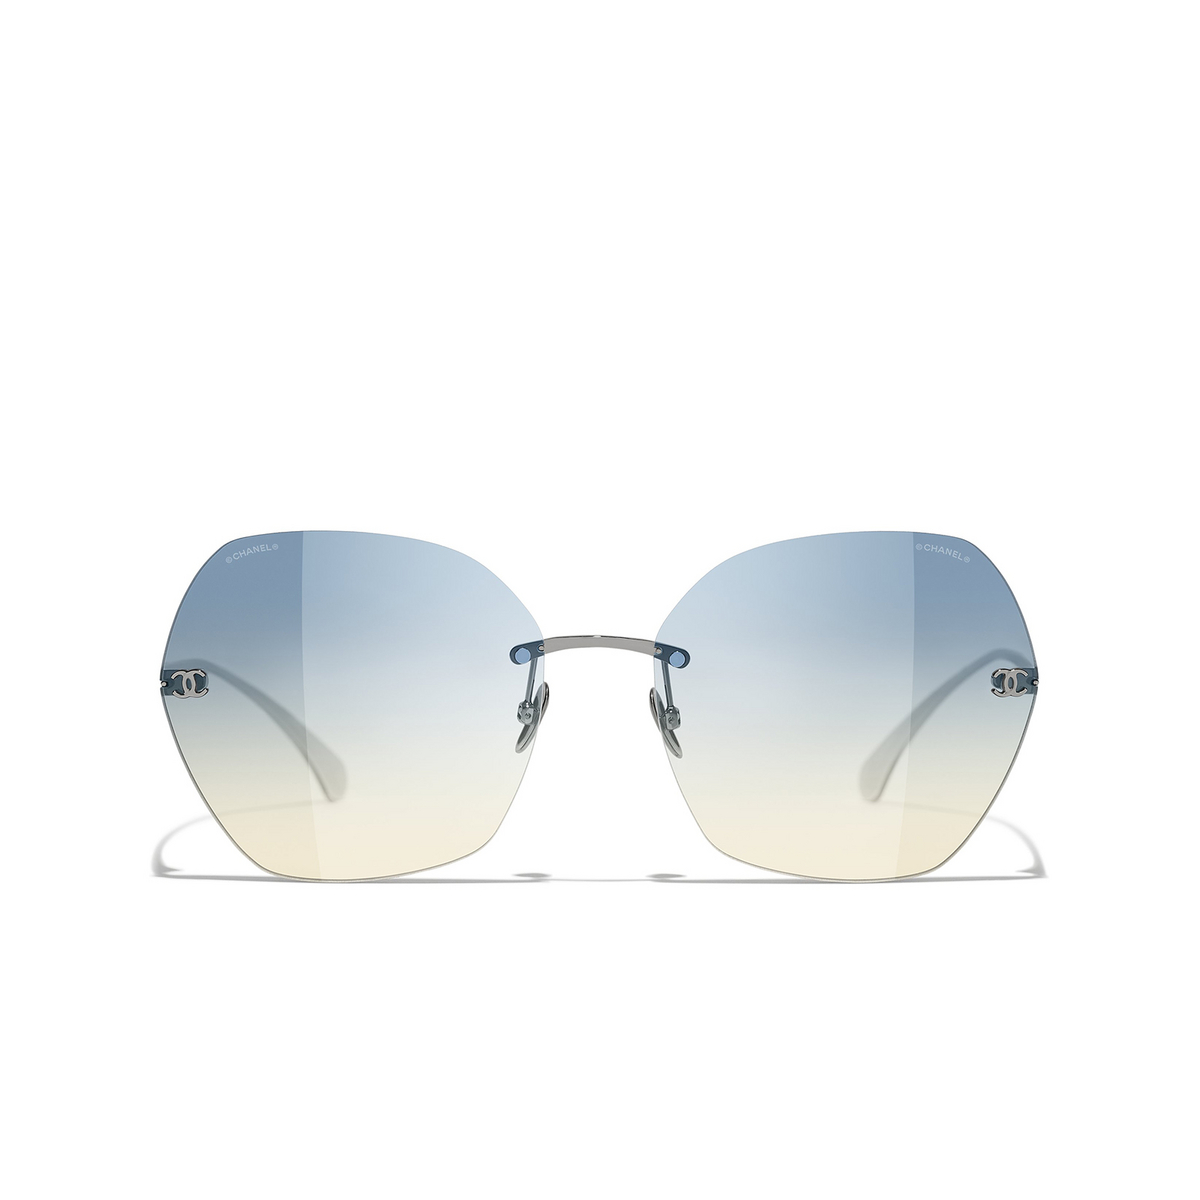 CHANEL square Sunglasses C10879 Dark Silver - front view